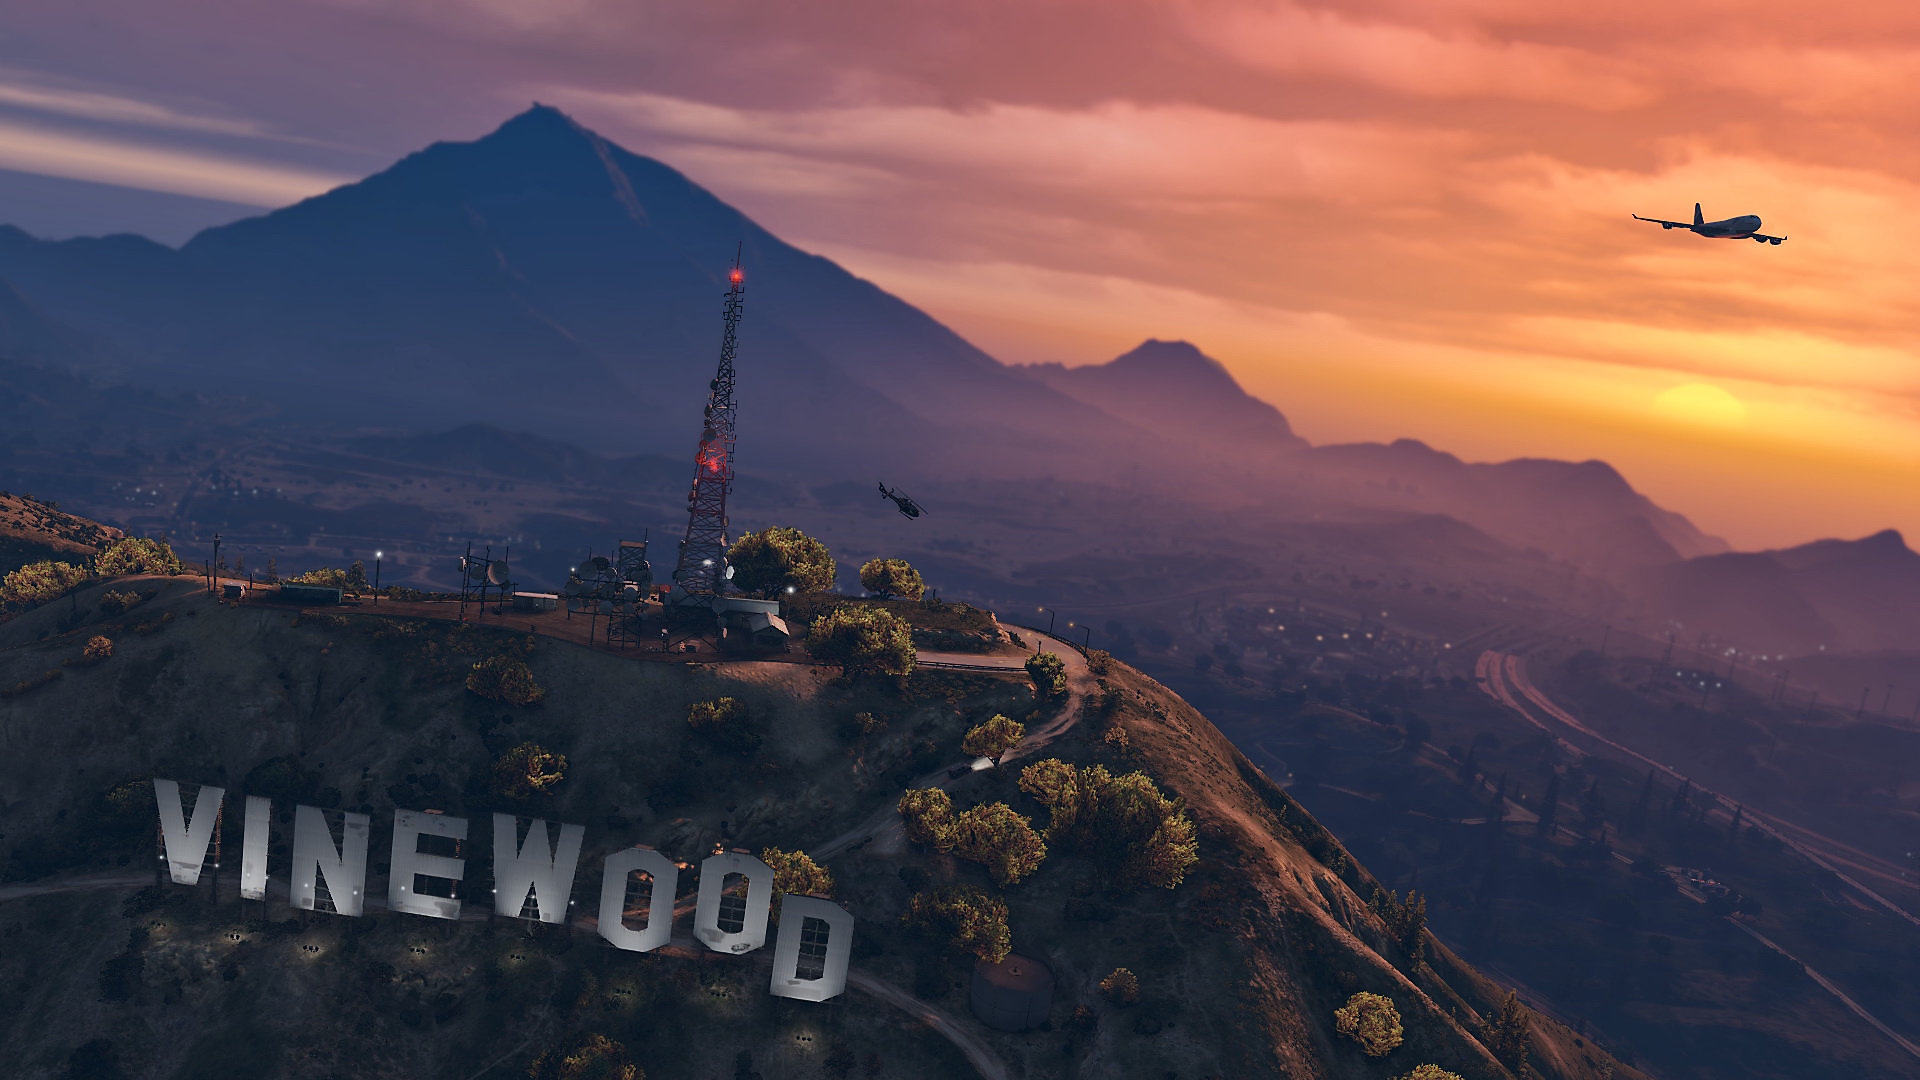 Grand Theft Auto V – zrzut ekranu przedstawiający słońce zachodzące nad górzystym krajobrazem z gigantycznymi literami „Vinewood”